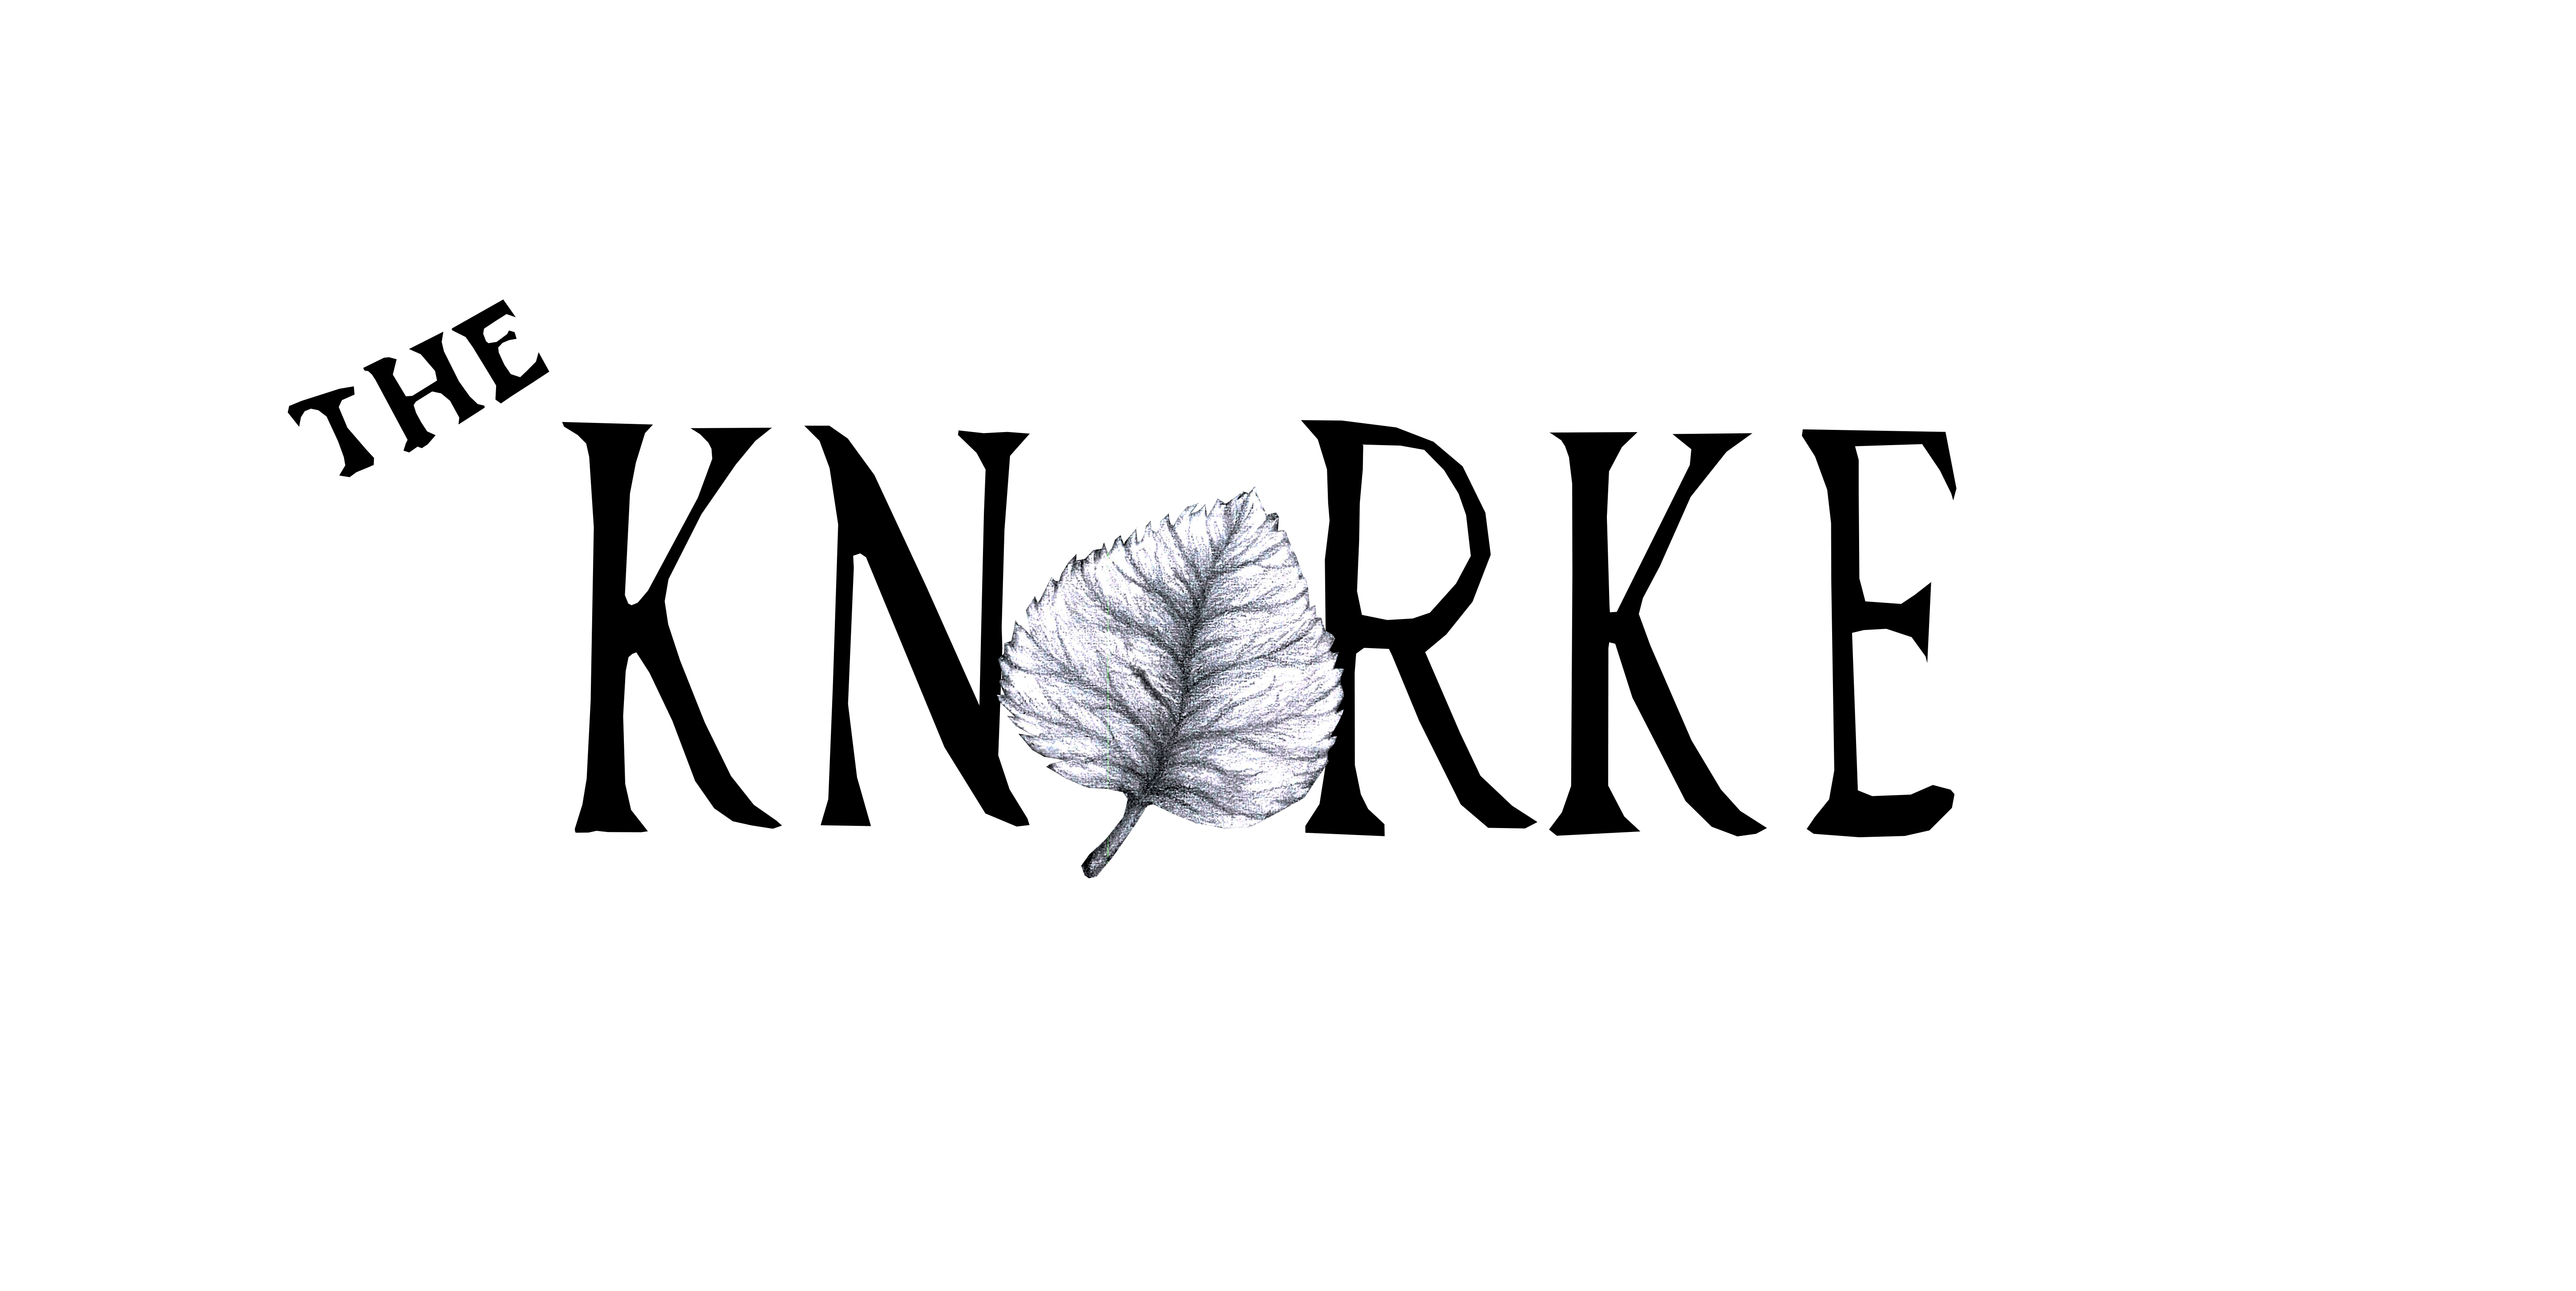 Il Knorke